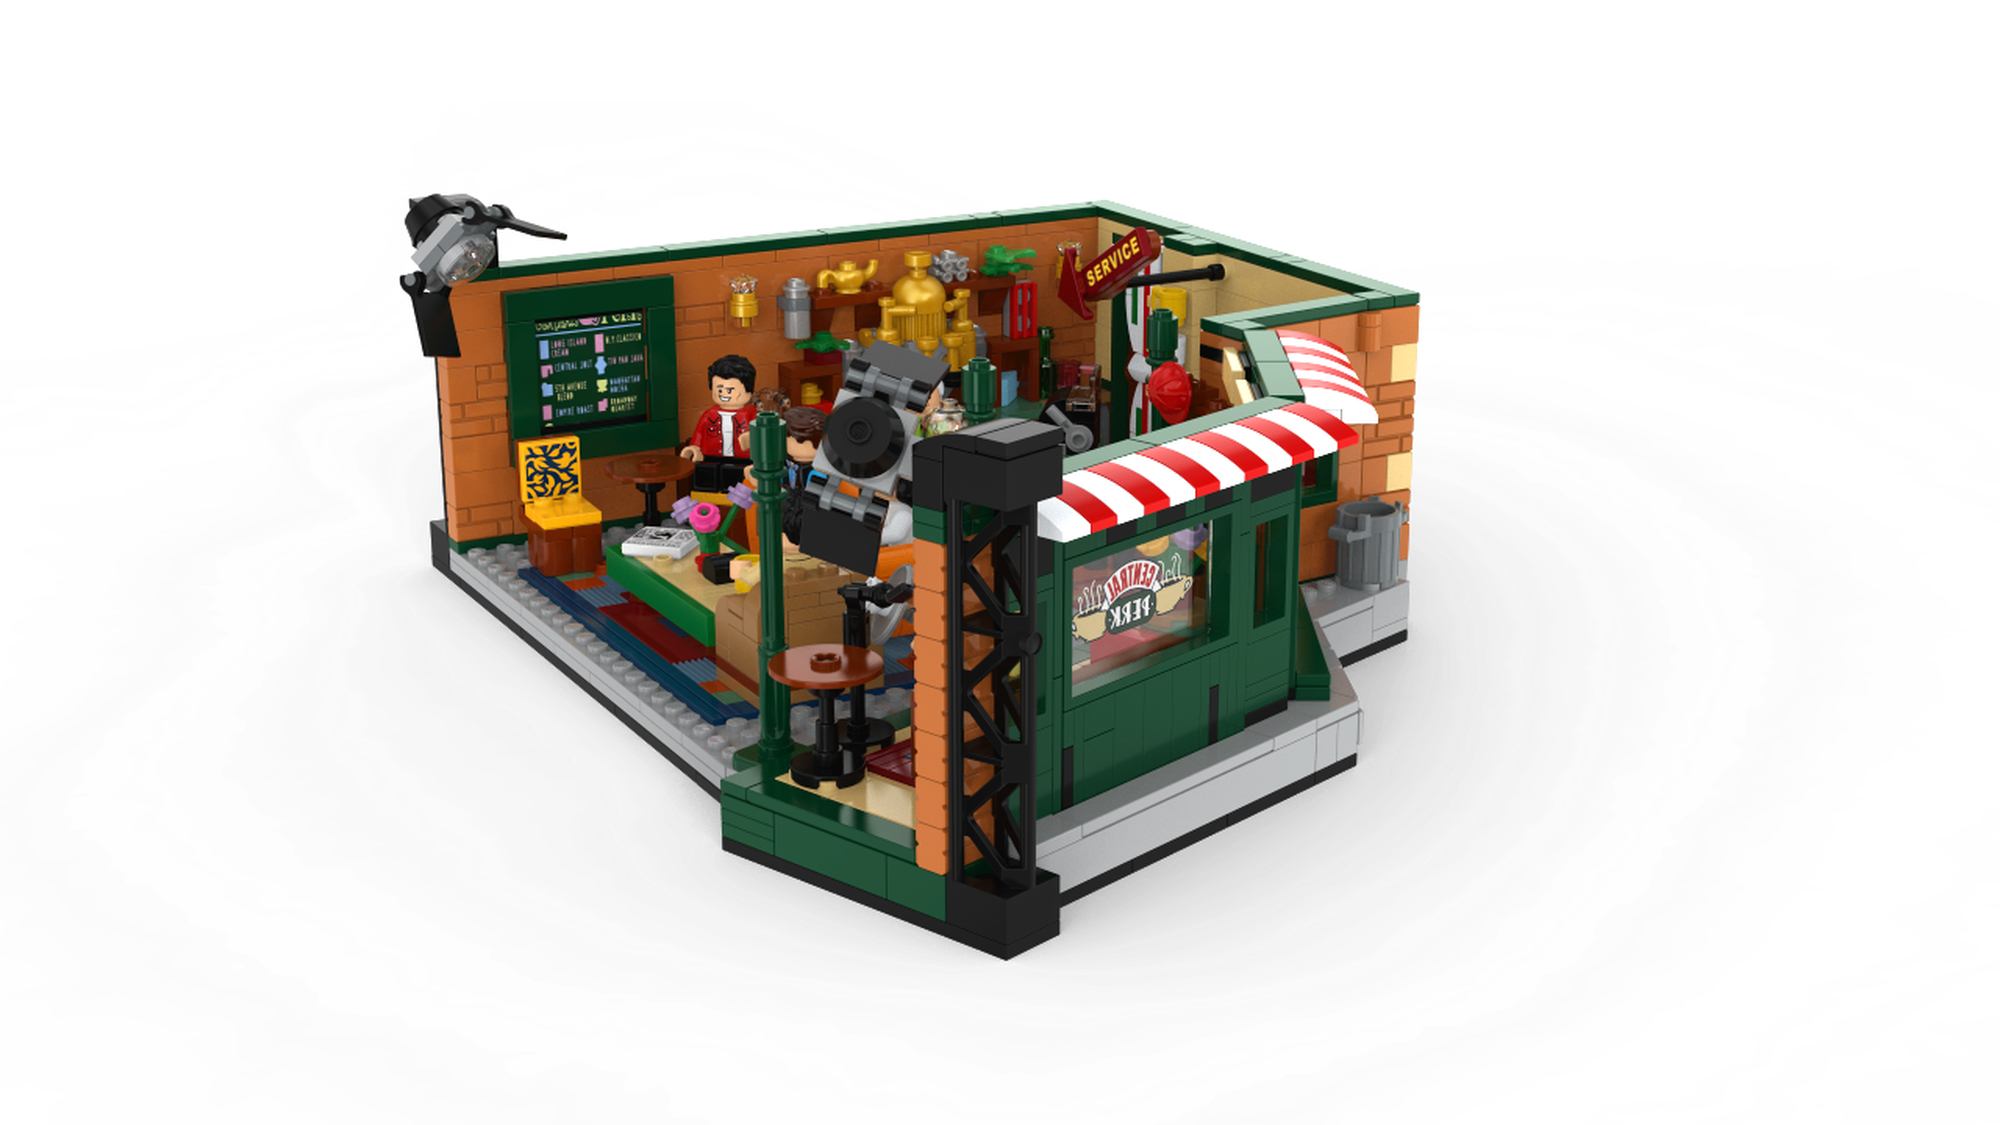 21319 Lego Central Perk da - 1099898207